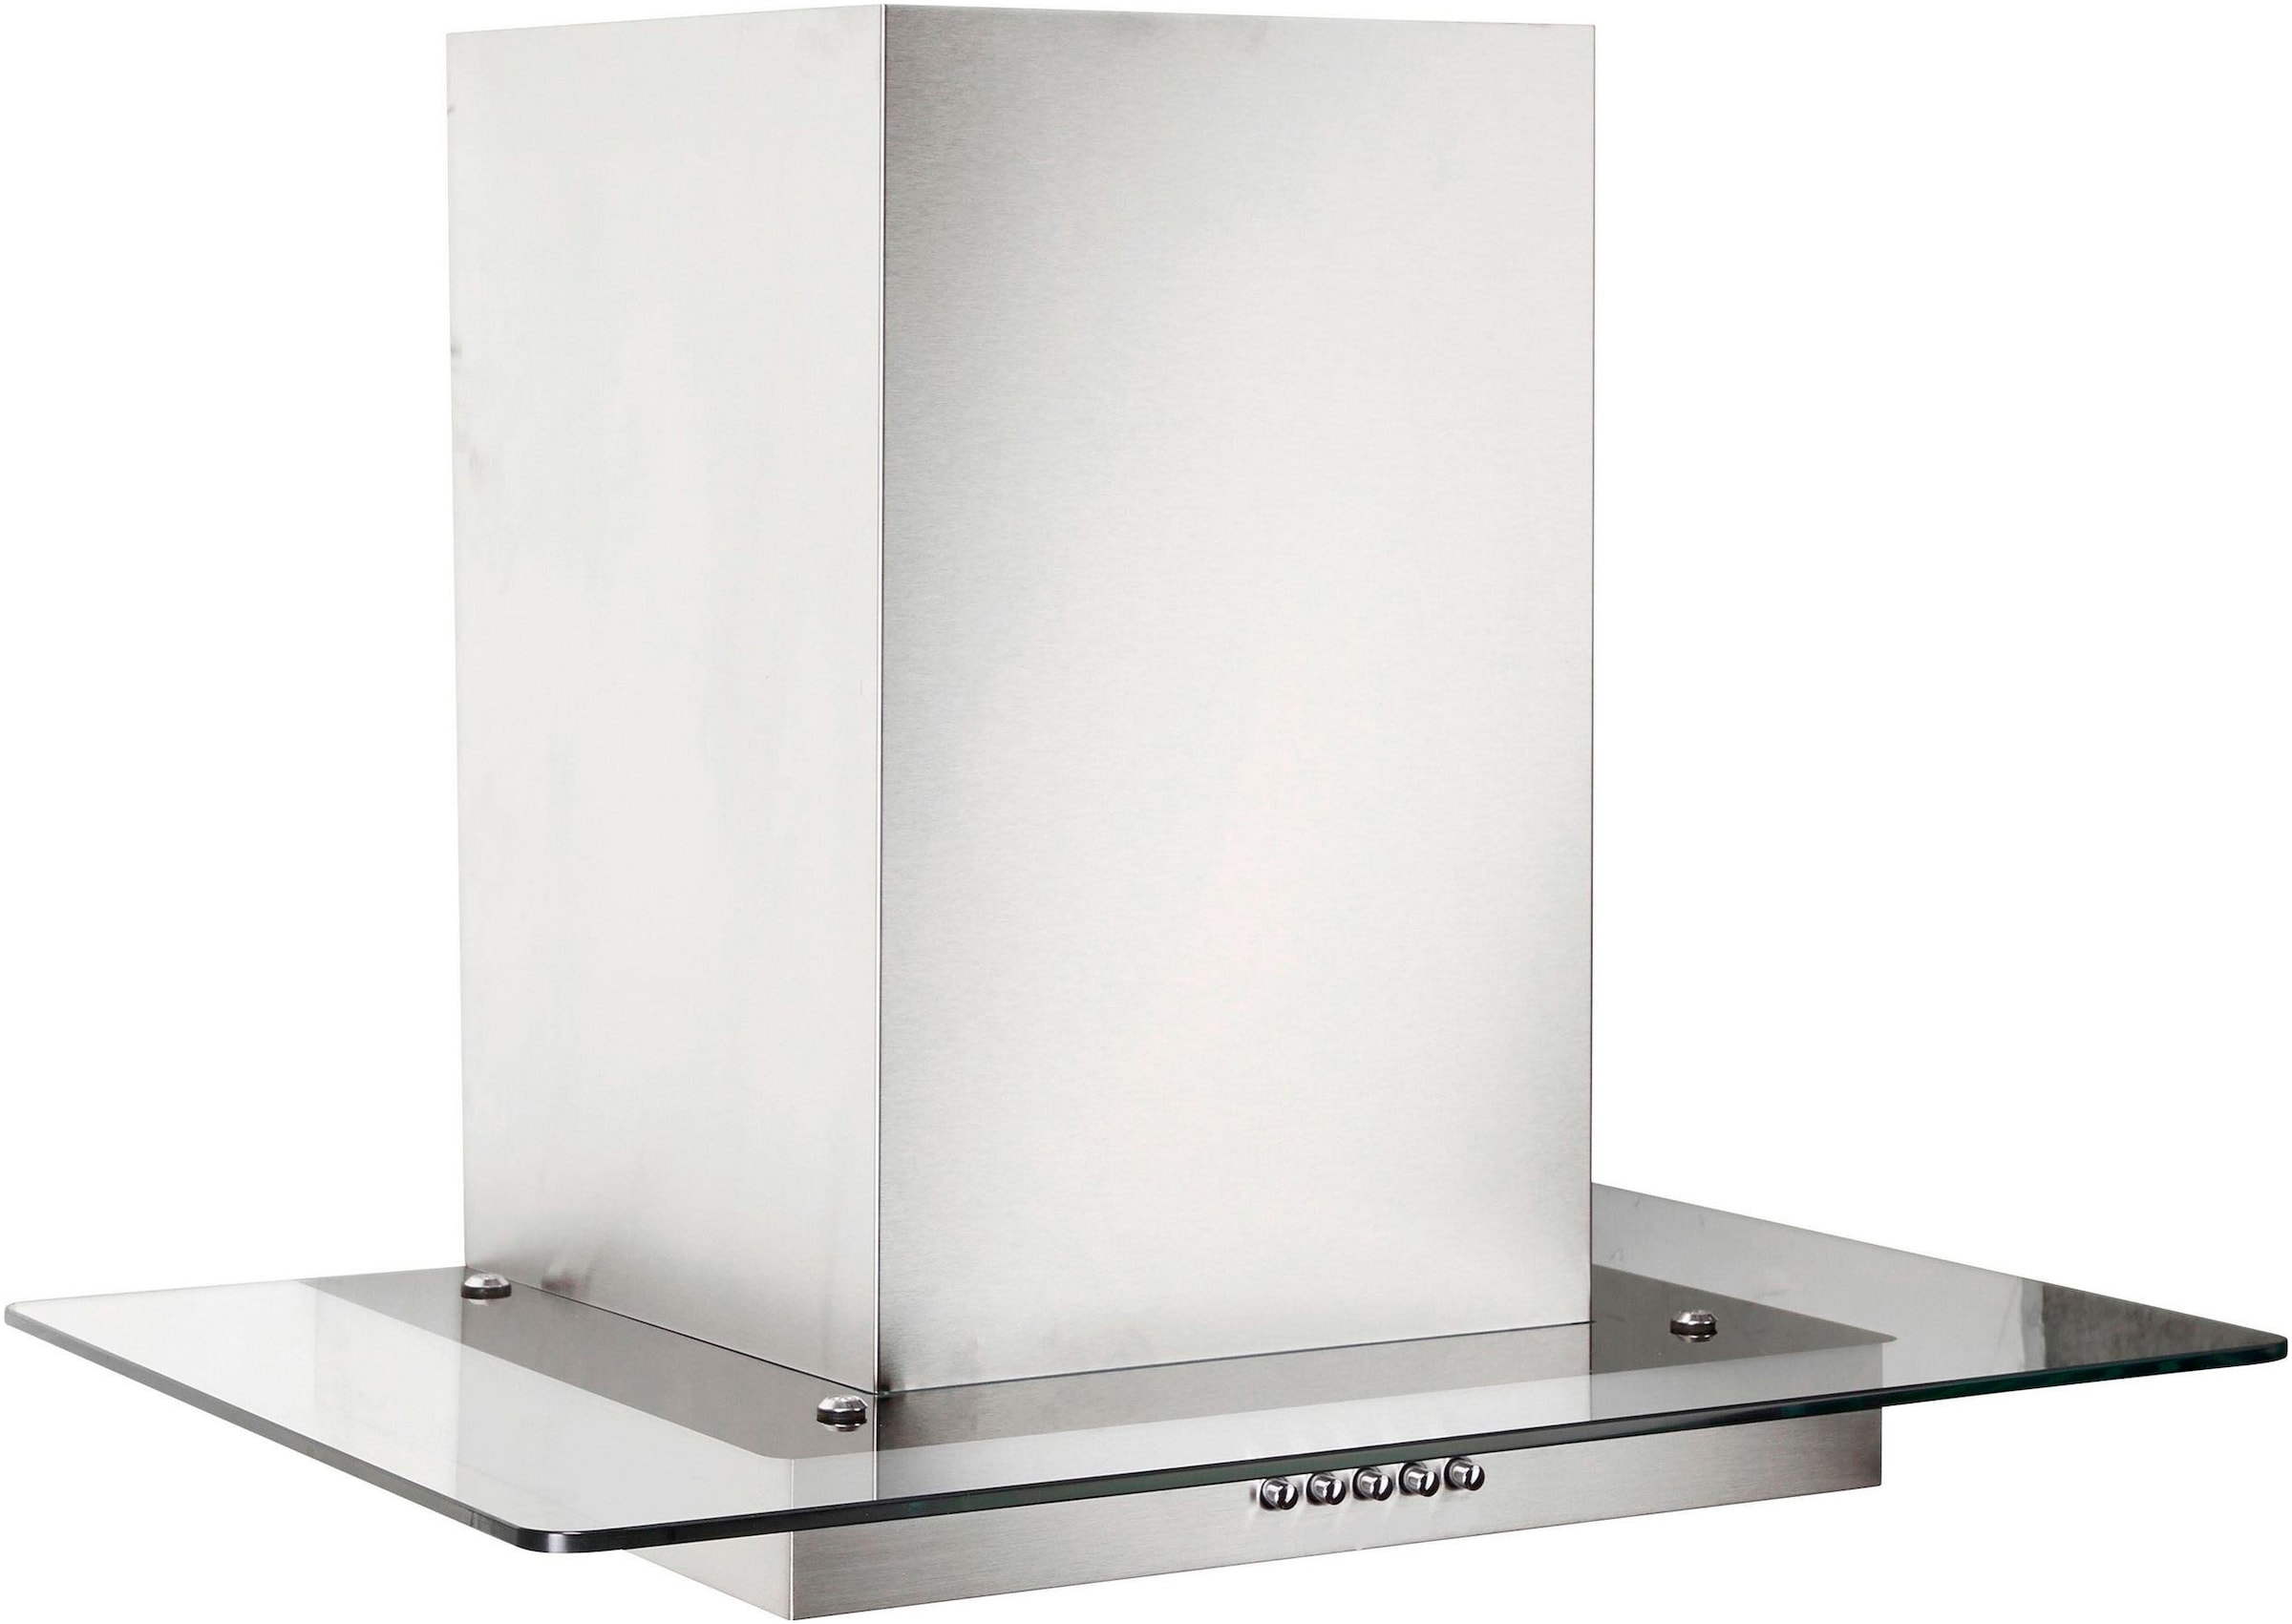 OPTIFIT Küchenzeile »Iver«, 270 cm breit, inkl. Elektrogeräte der Marke HANSEATIC, wahlweise mit oder ohne vollintegrierbaren Geschirrspüler